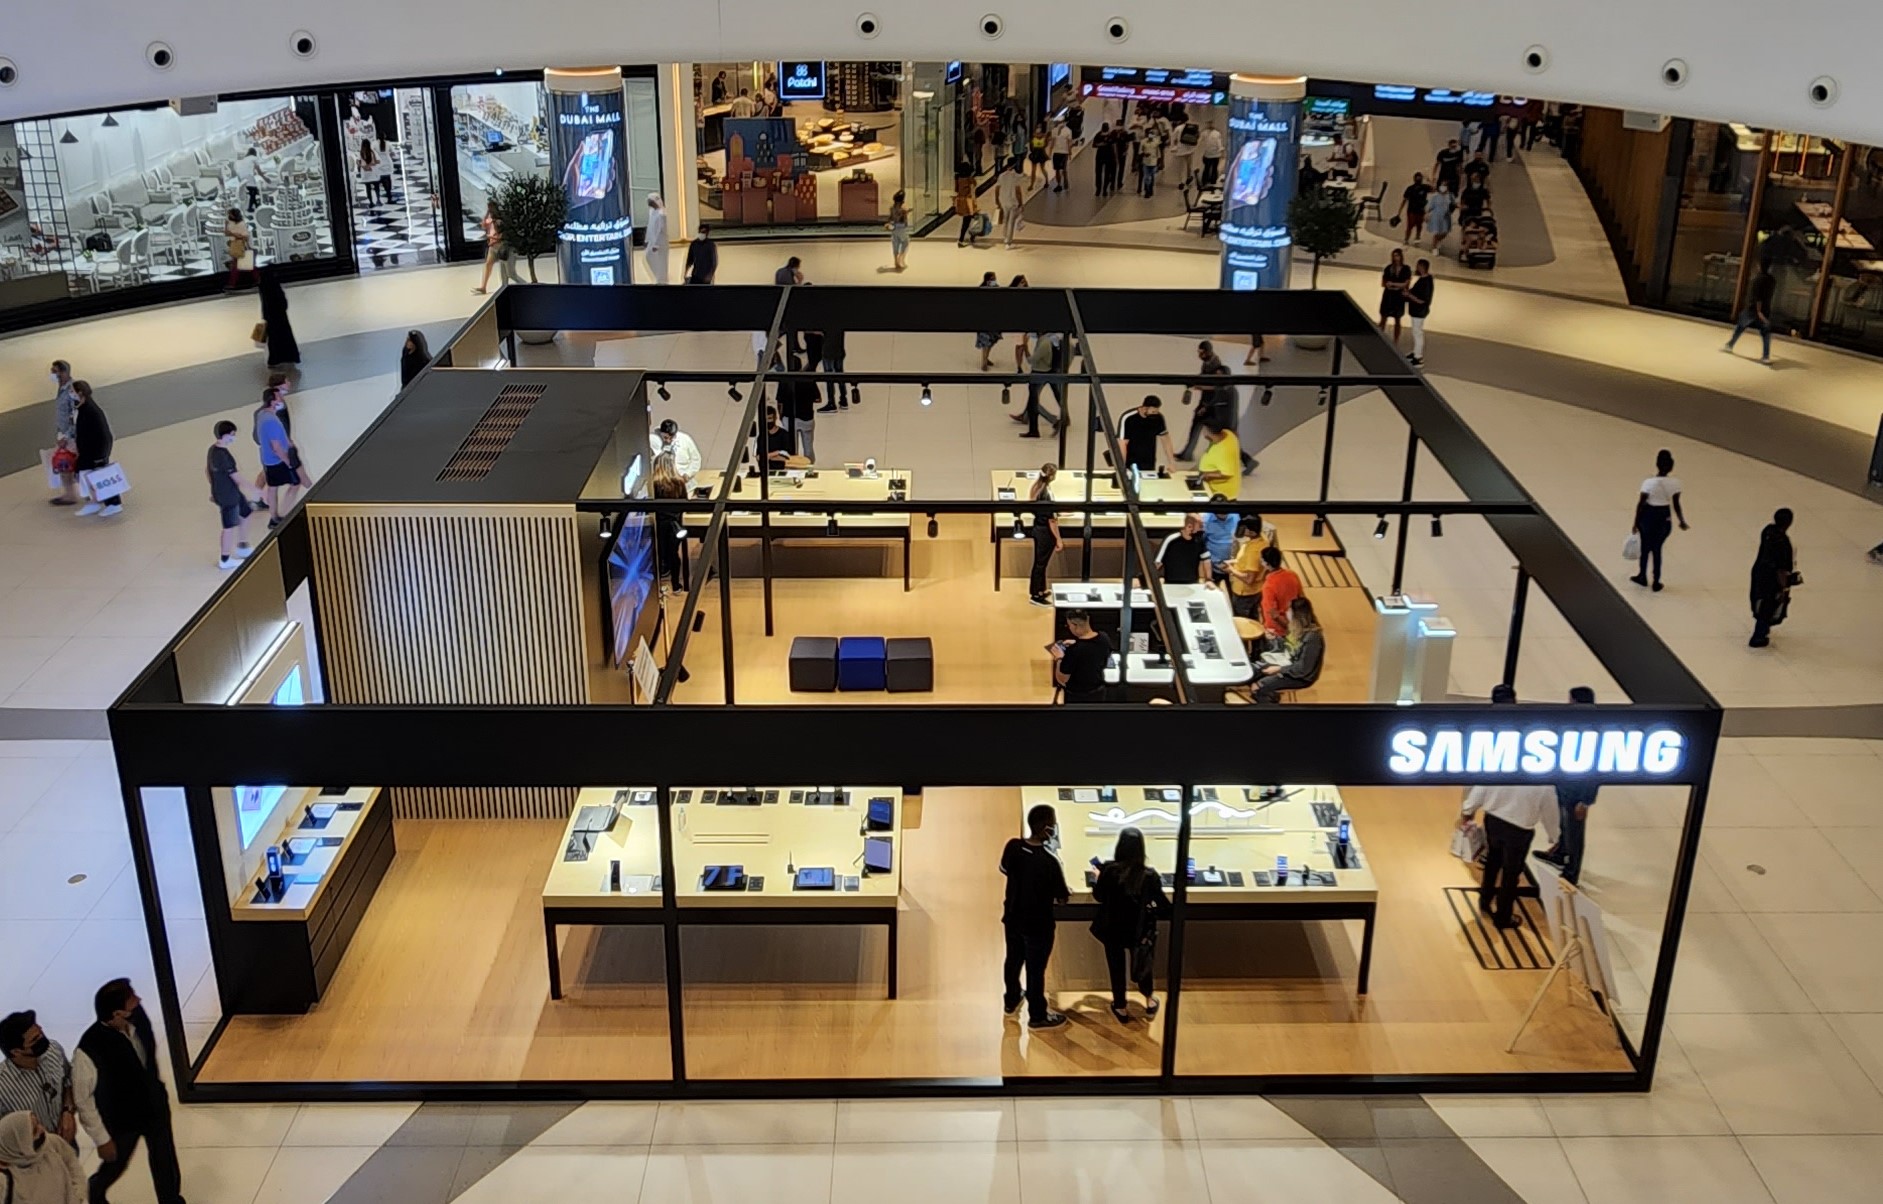 سامسونج تطلق متجراً مؤقتاً لتمكين العملاء من اكتشاف دبي مول بمنظور جديد باستخدام سلسلة هواتف Galaxy S22 